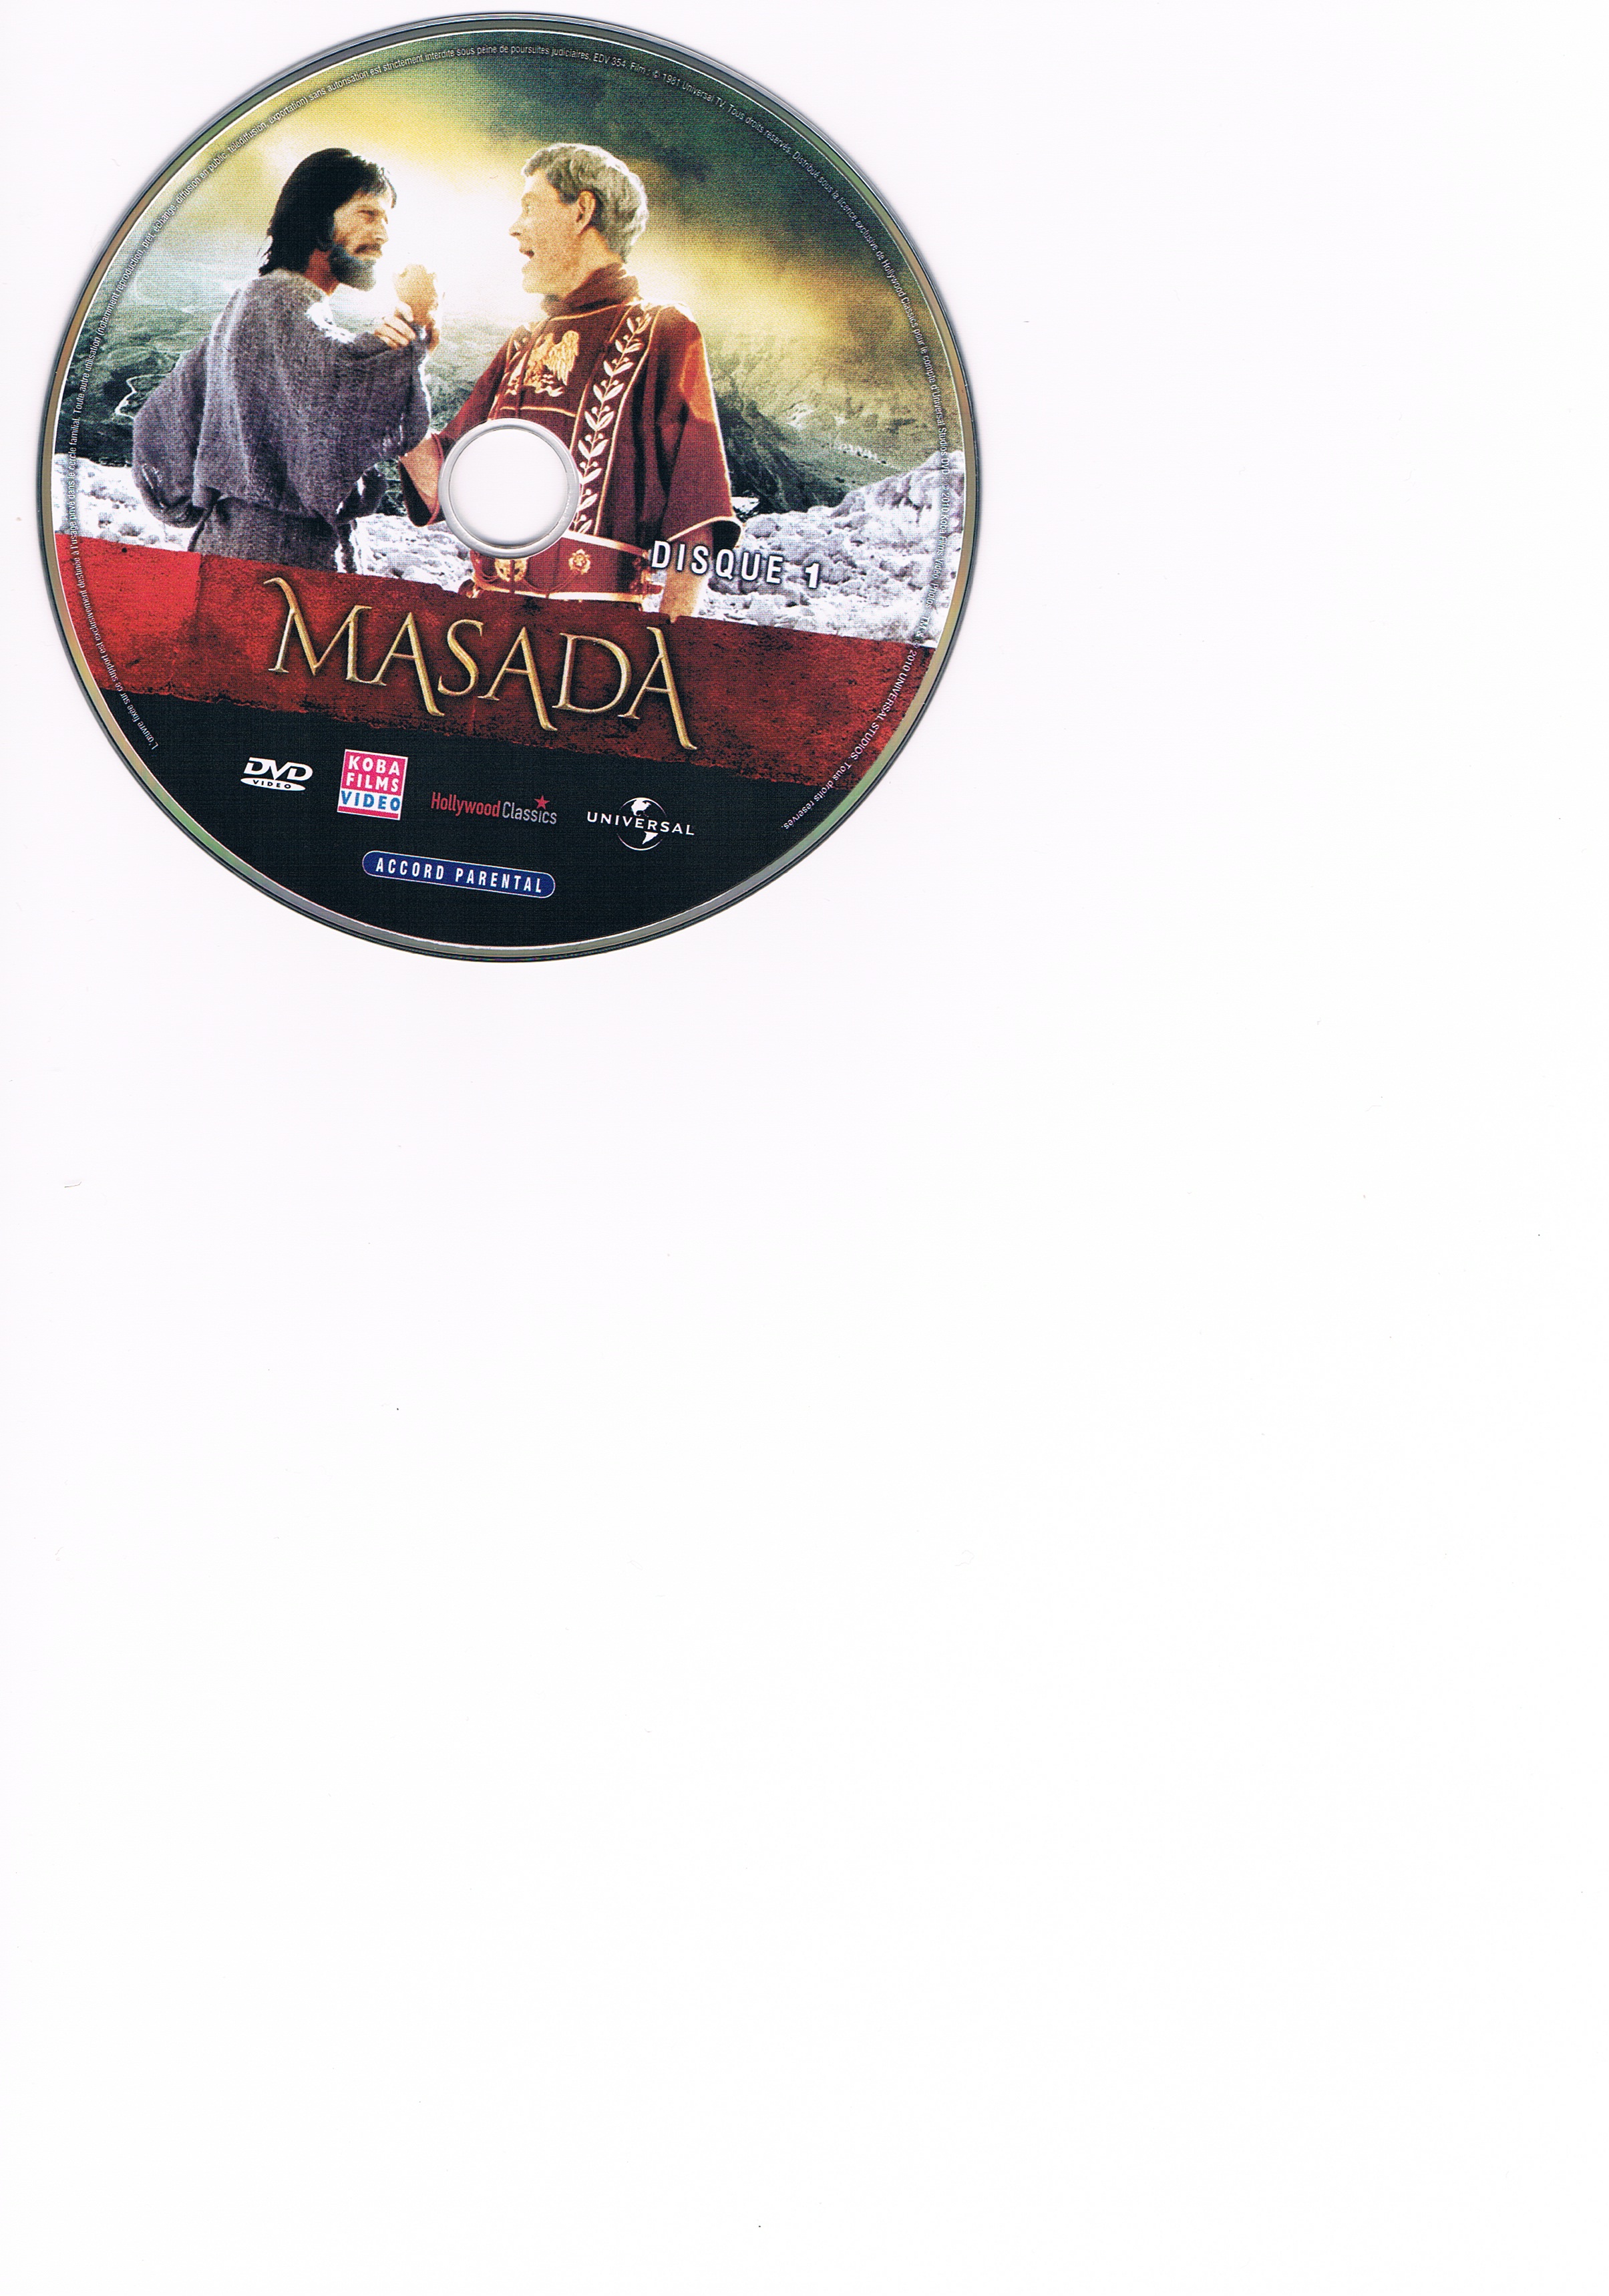 Masada DVD 1